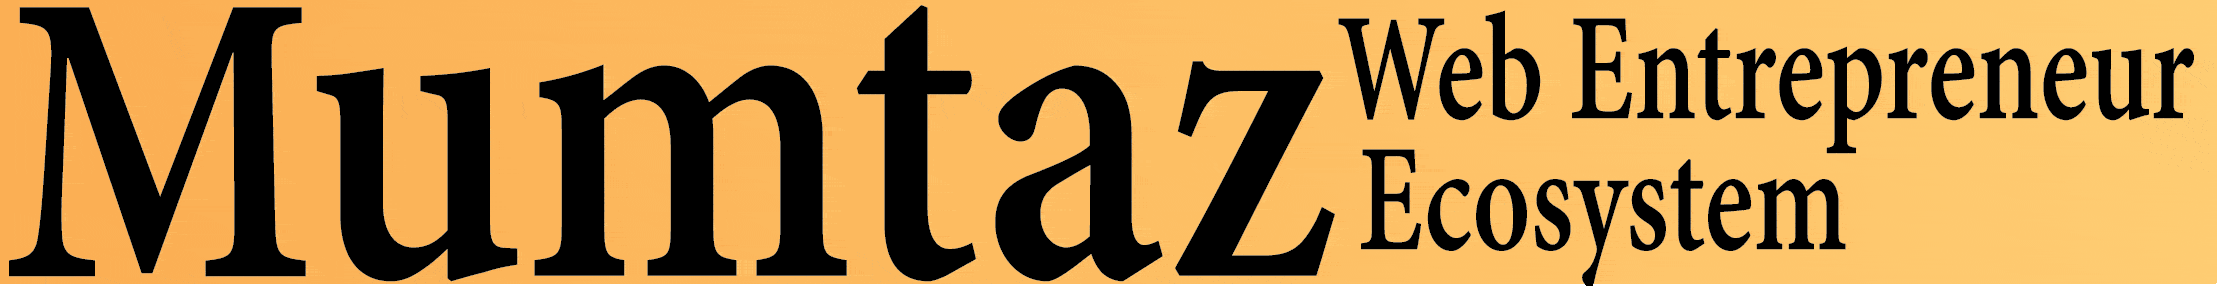 mumtaz-logo